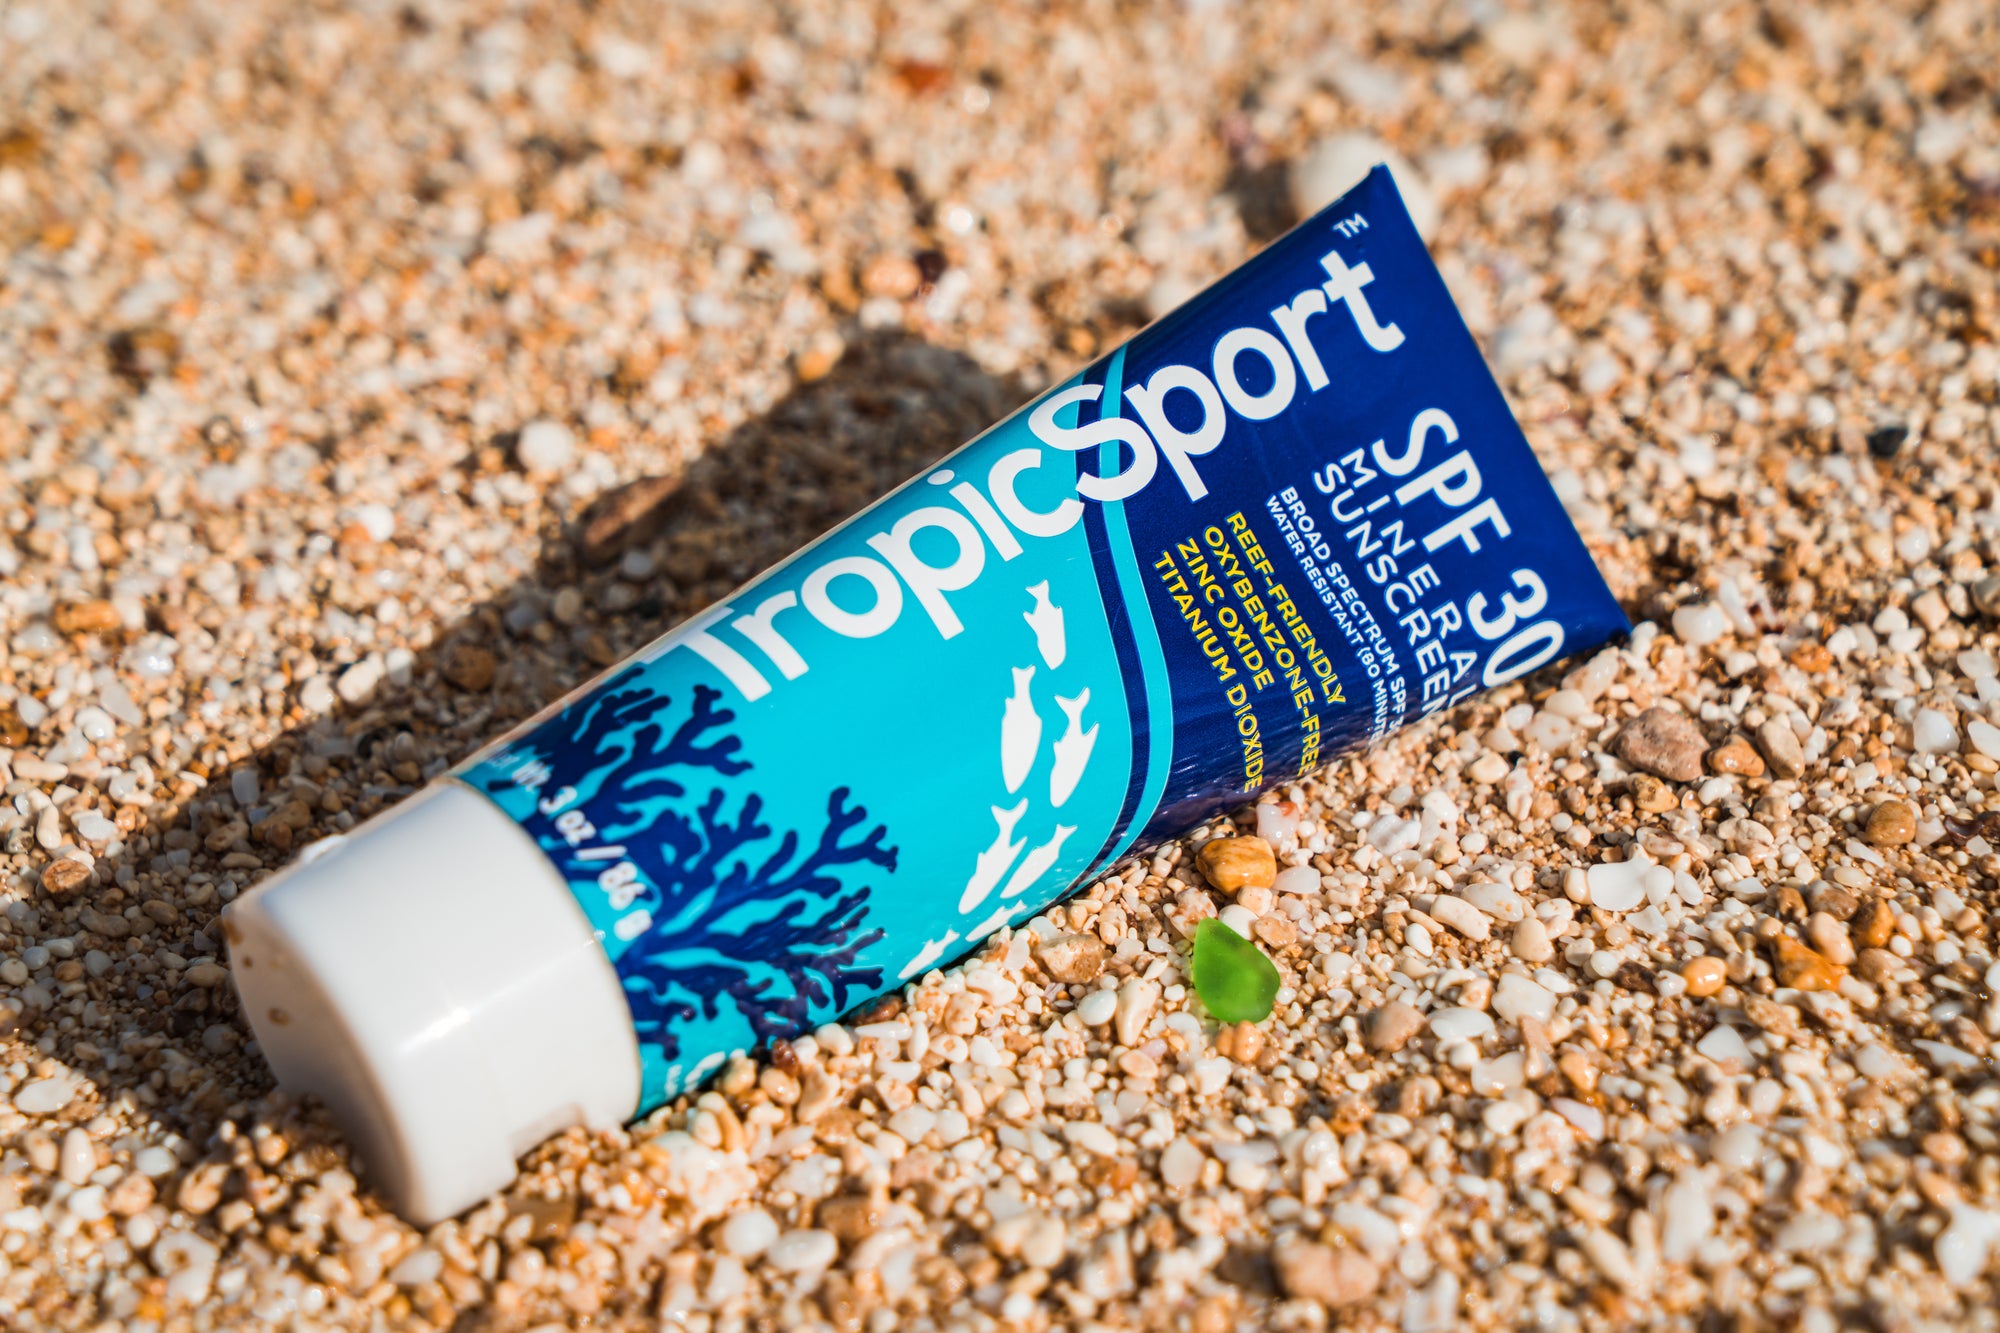 TropicSport Mineral Sunscreen